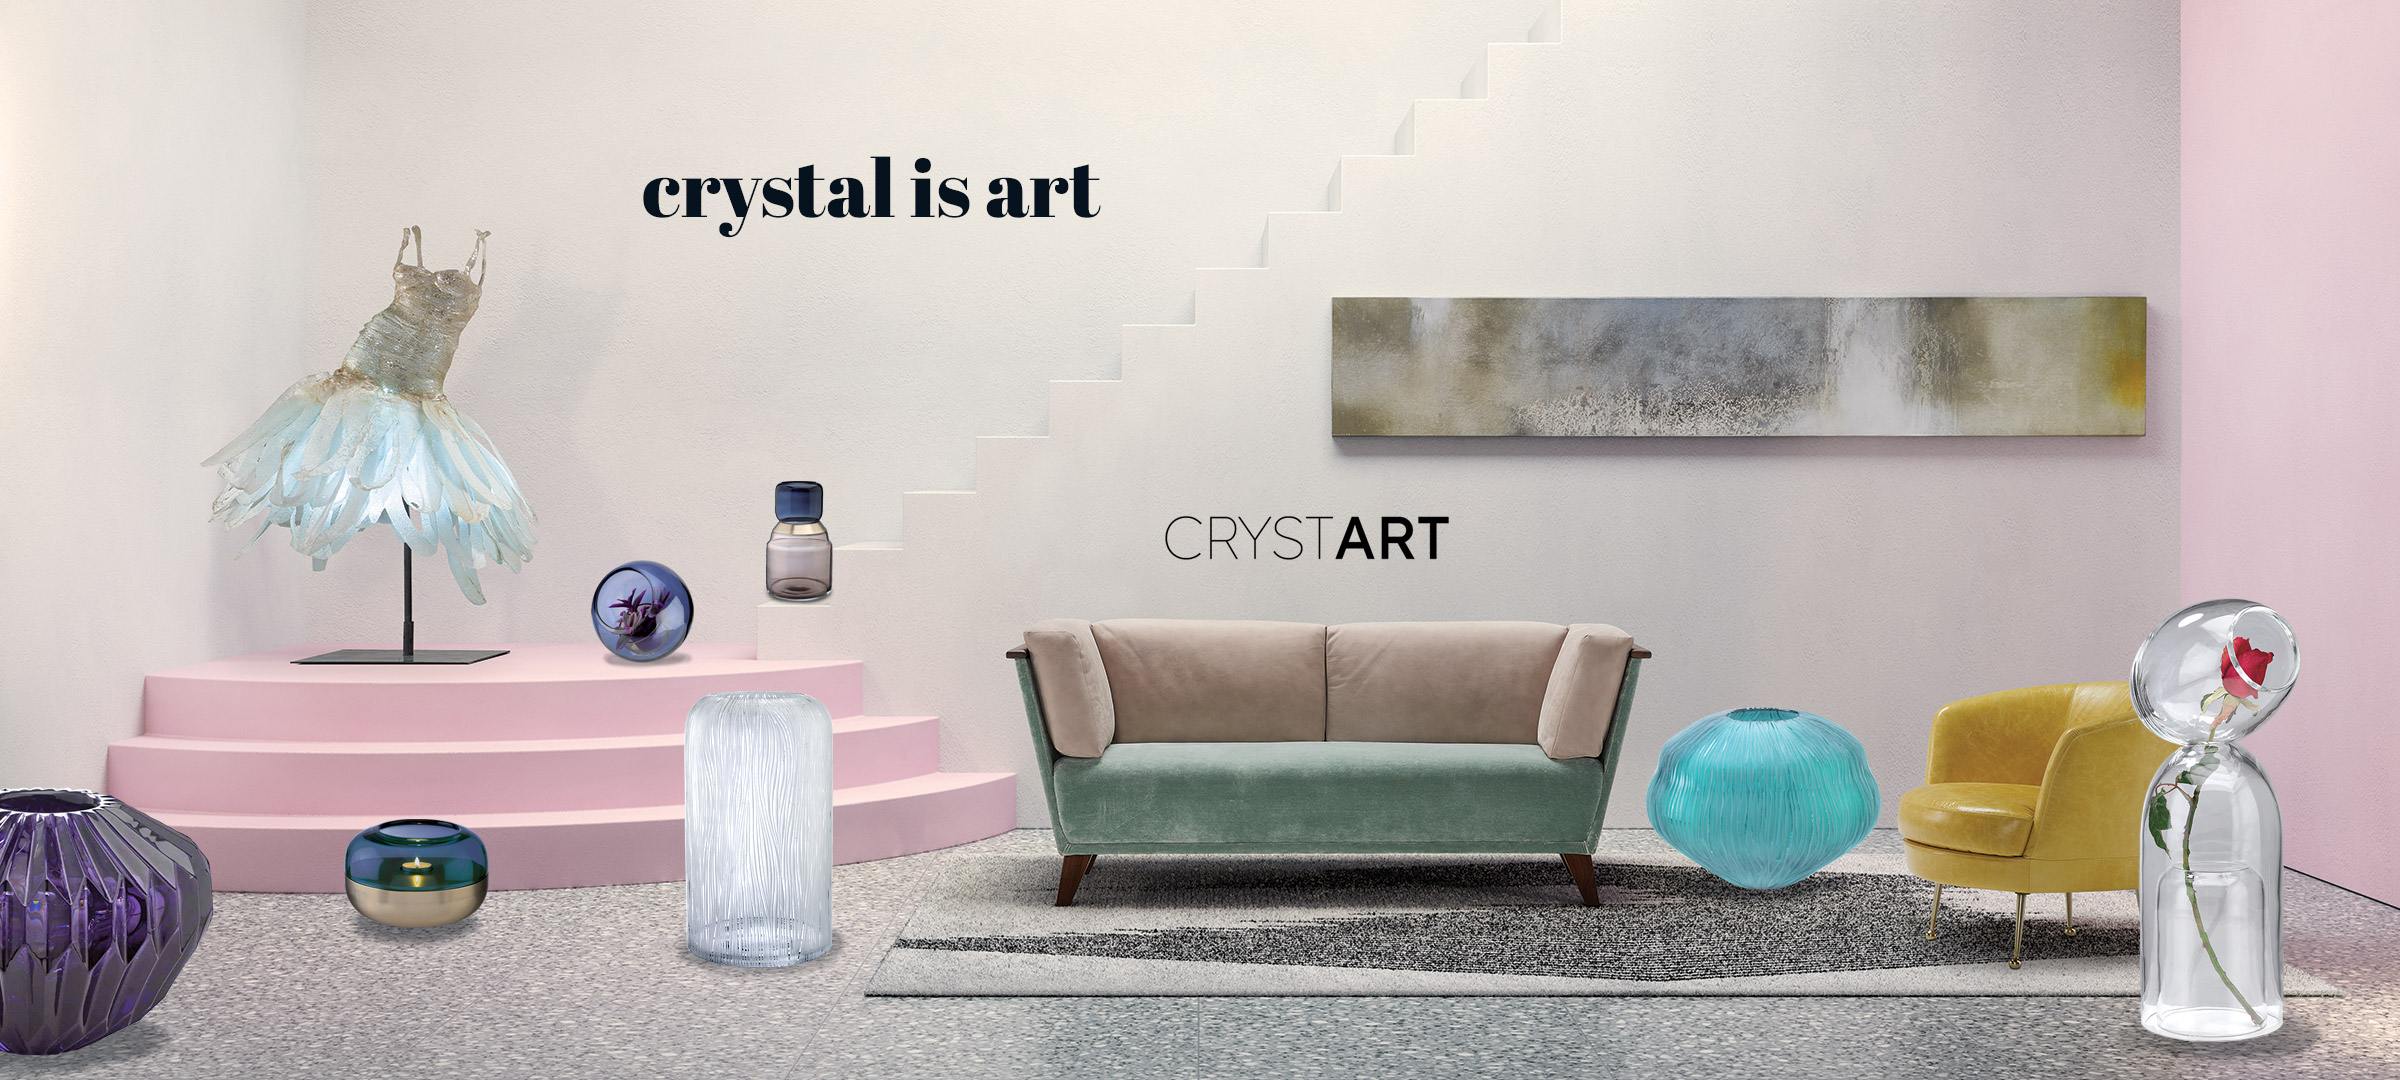 Crystart – social media marketing